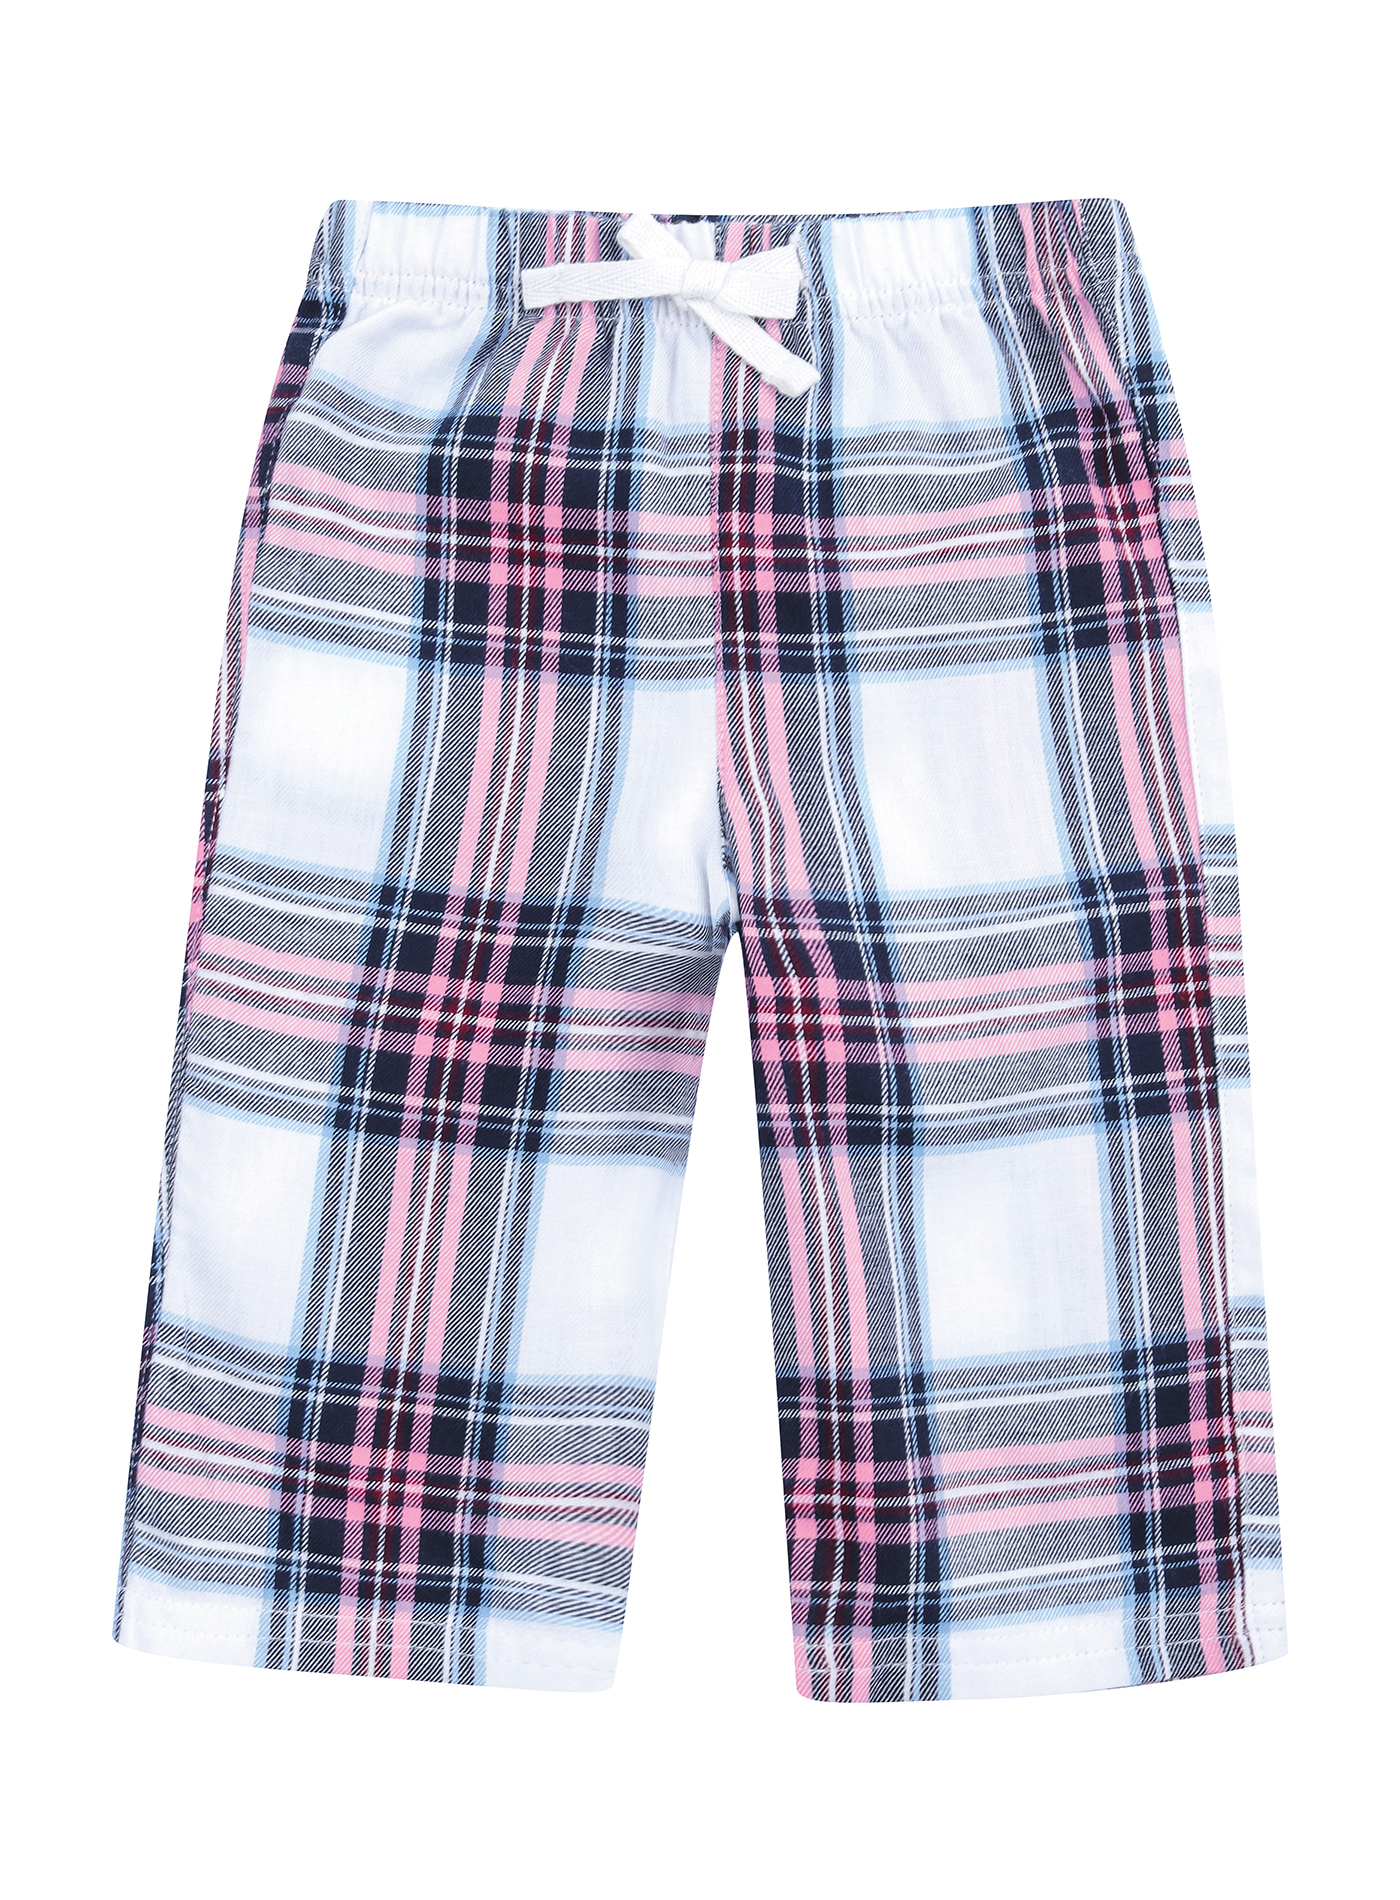 Kalhoty pro miminka Larkwood Tartan - Modrá a bílá 3-4